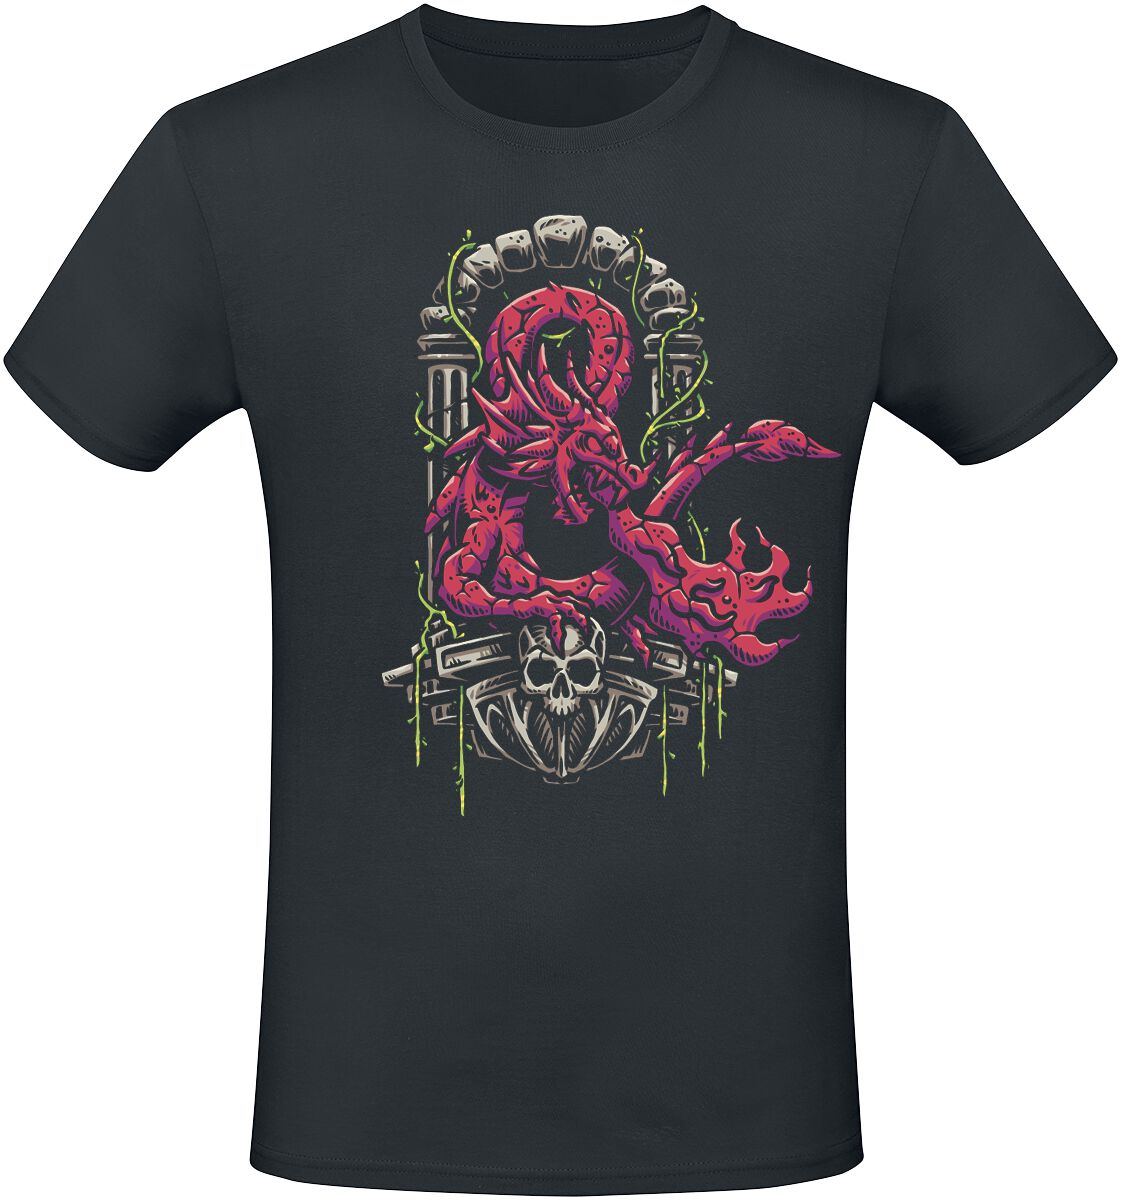 Dungeons and Dragons - Gaming T-Shirt - Ampersand Dragon - S bis XXL - für Männer - Größe S - schwarz  - EMP exklusives Merchandise!